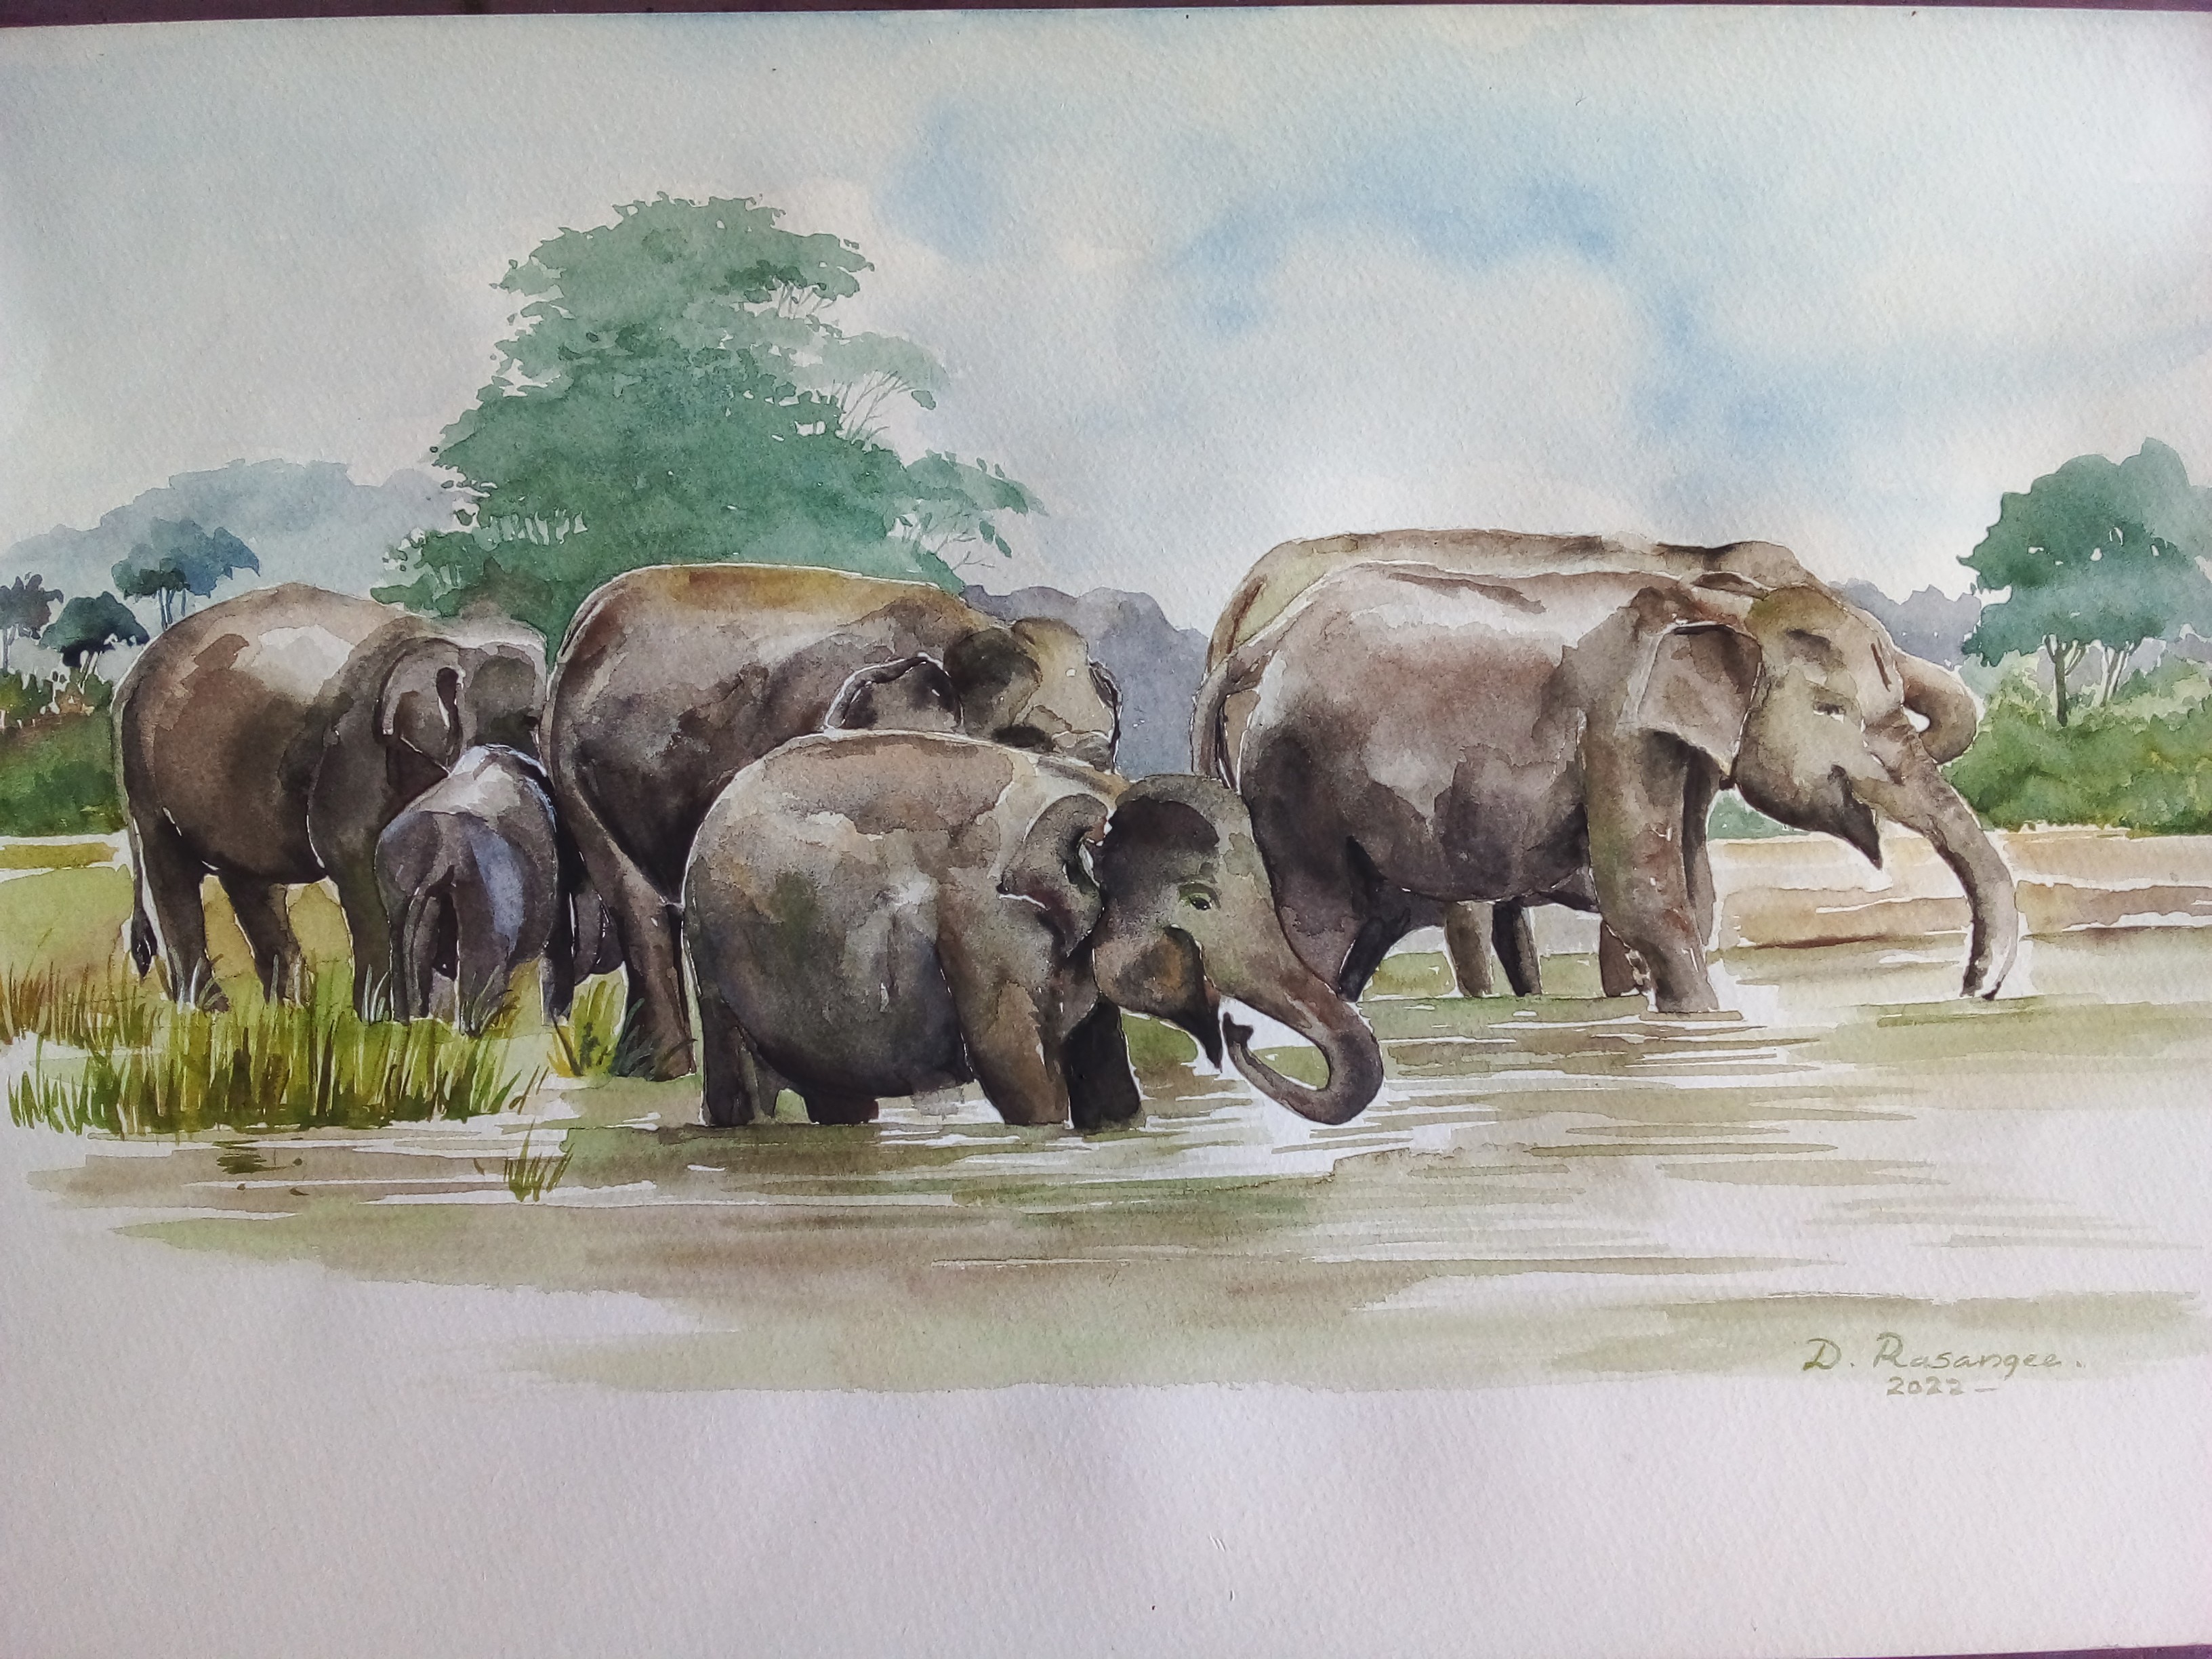 Elephants 7 by Dhamitha Rasangee